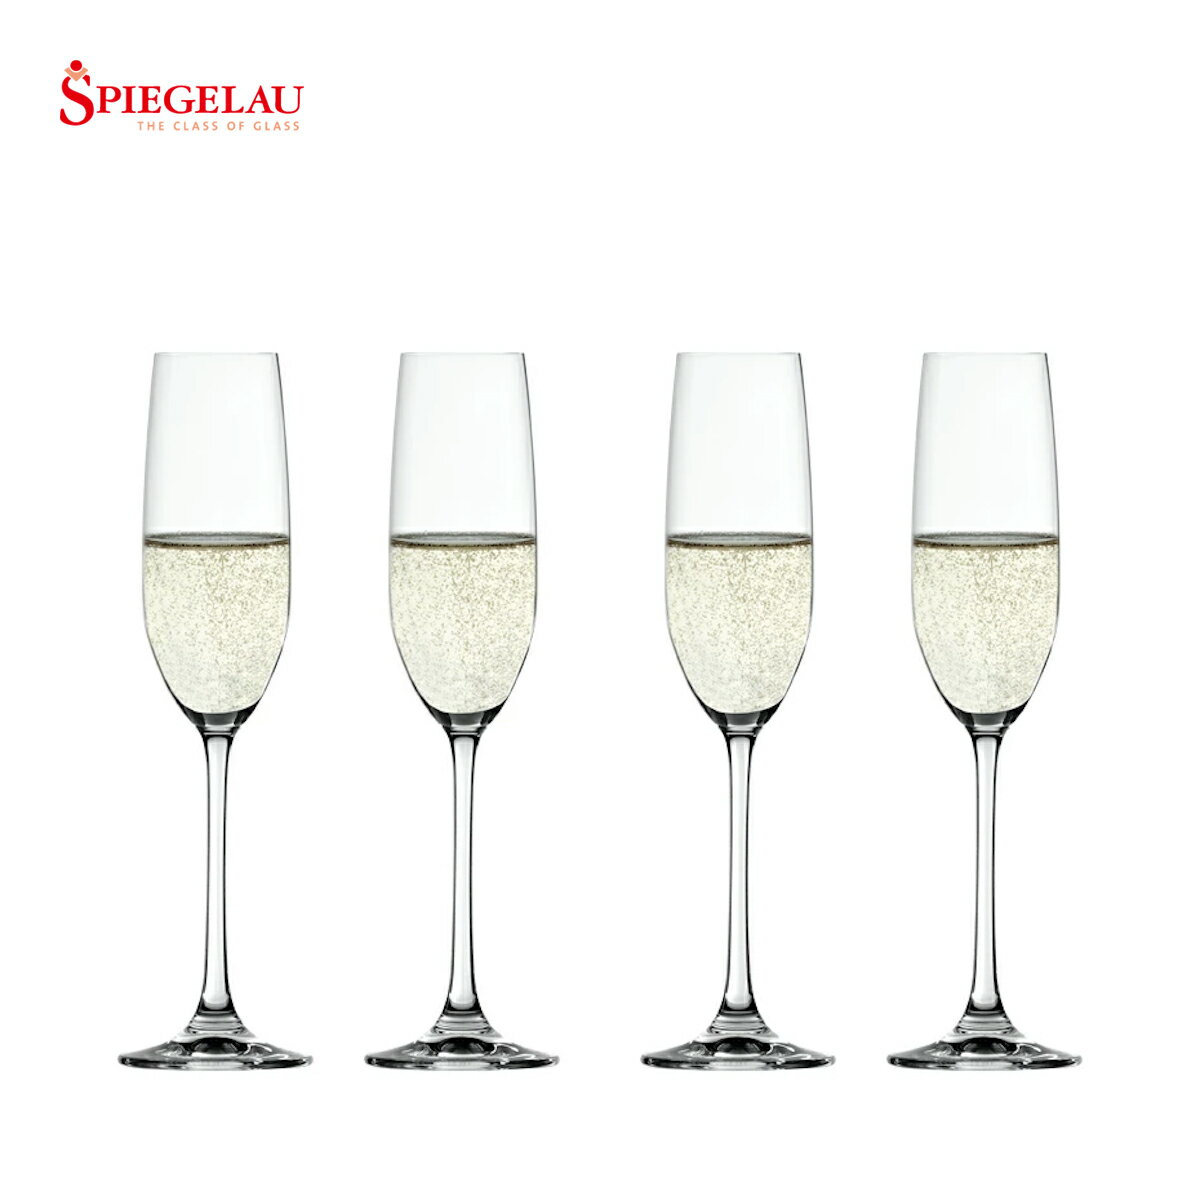 シュピゲラウ公式 サルーテ シャンパン・フルート 4個入 4720175 ラッピング無料 SPIEGELAU